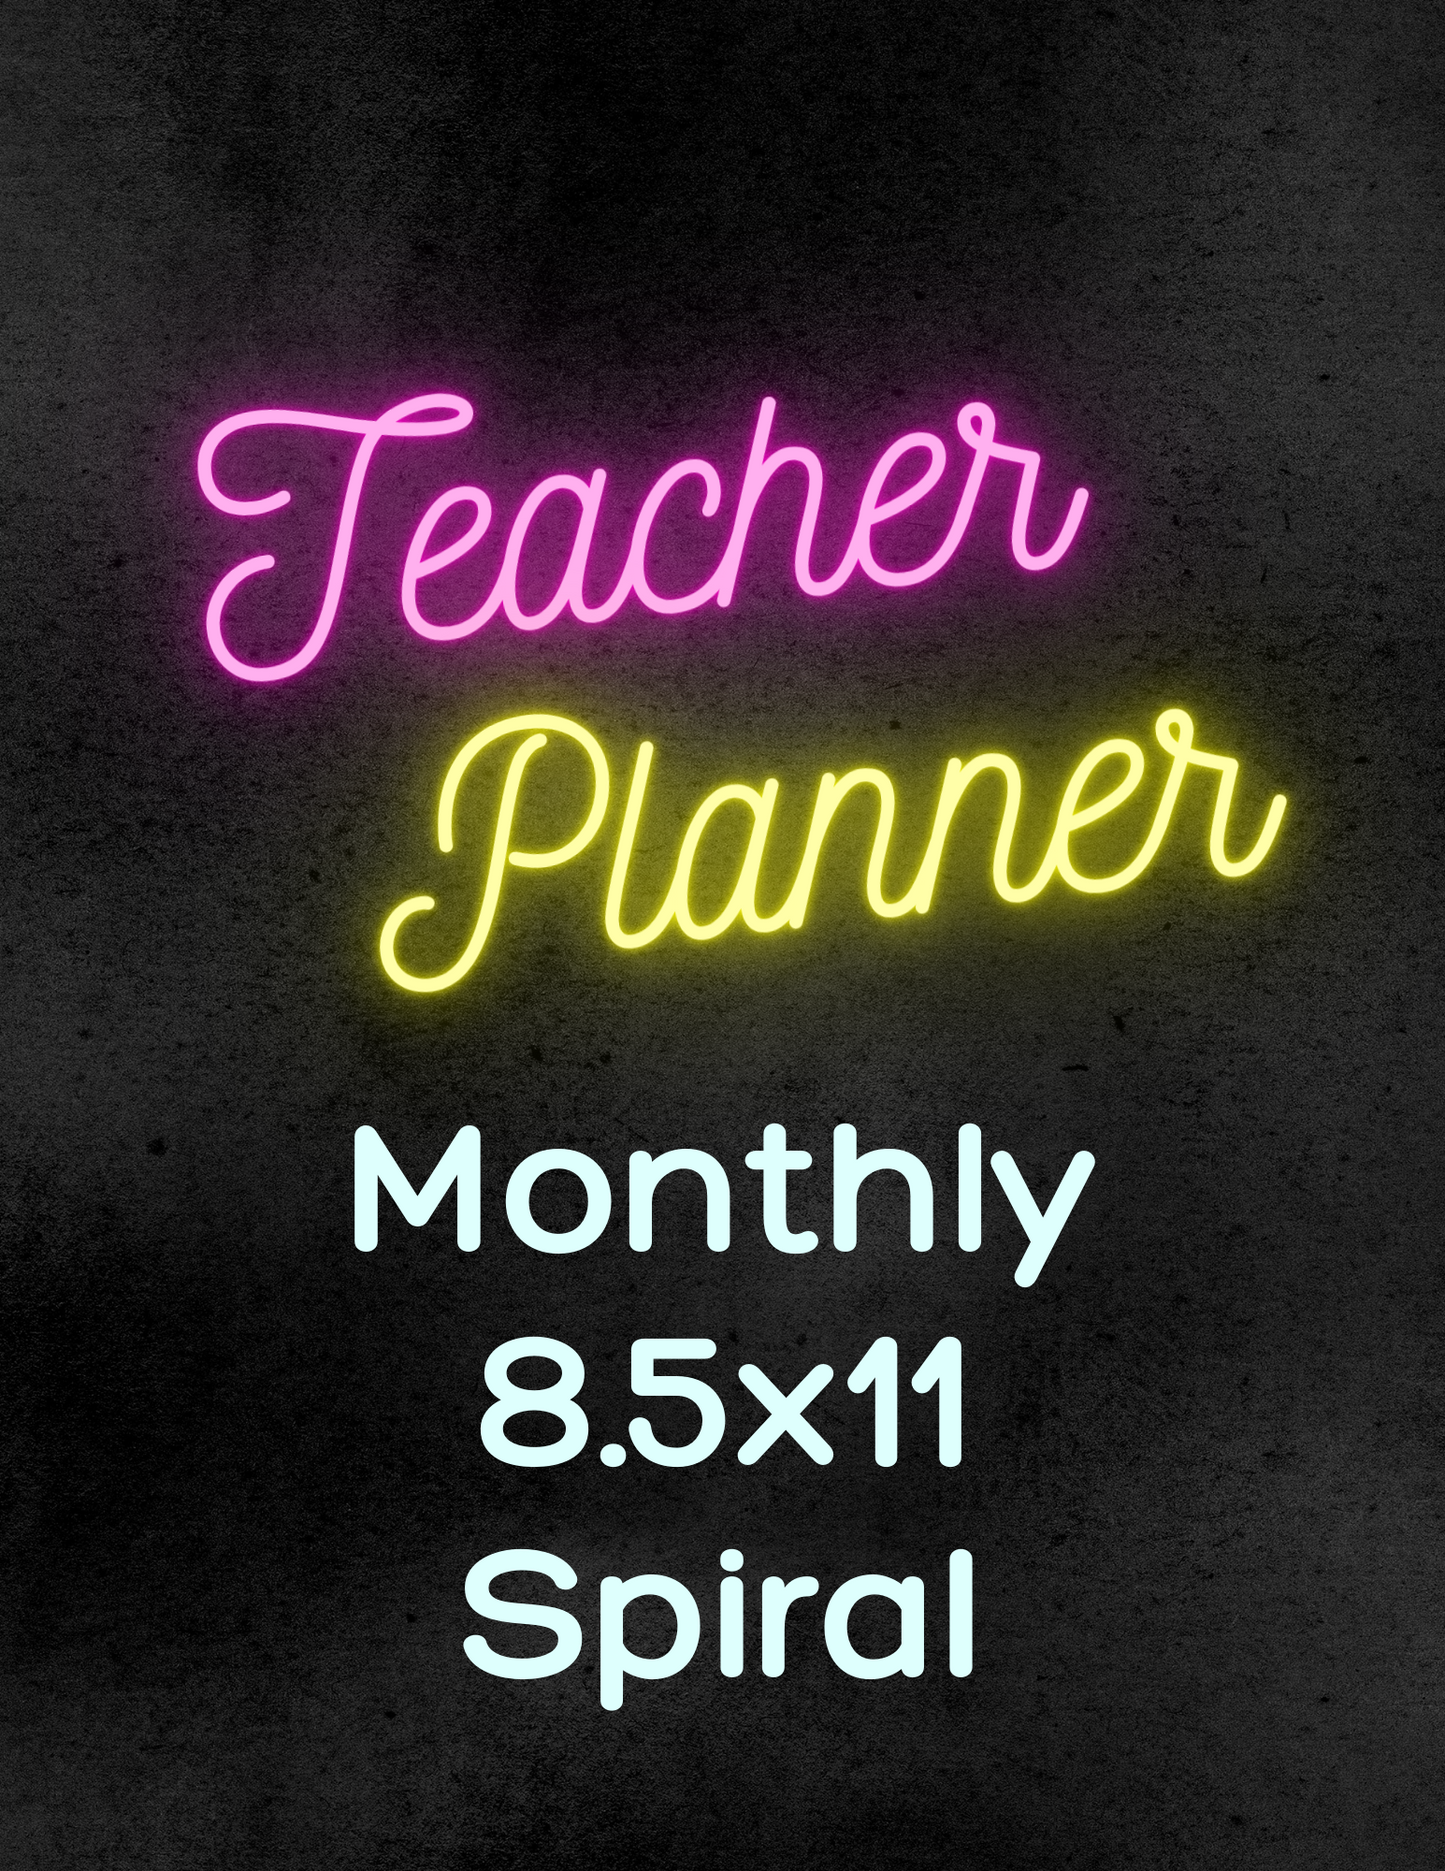 Teacher Planner - Full Size/Spiral (EDGEFIELD)